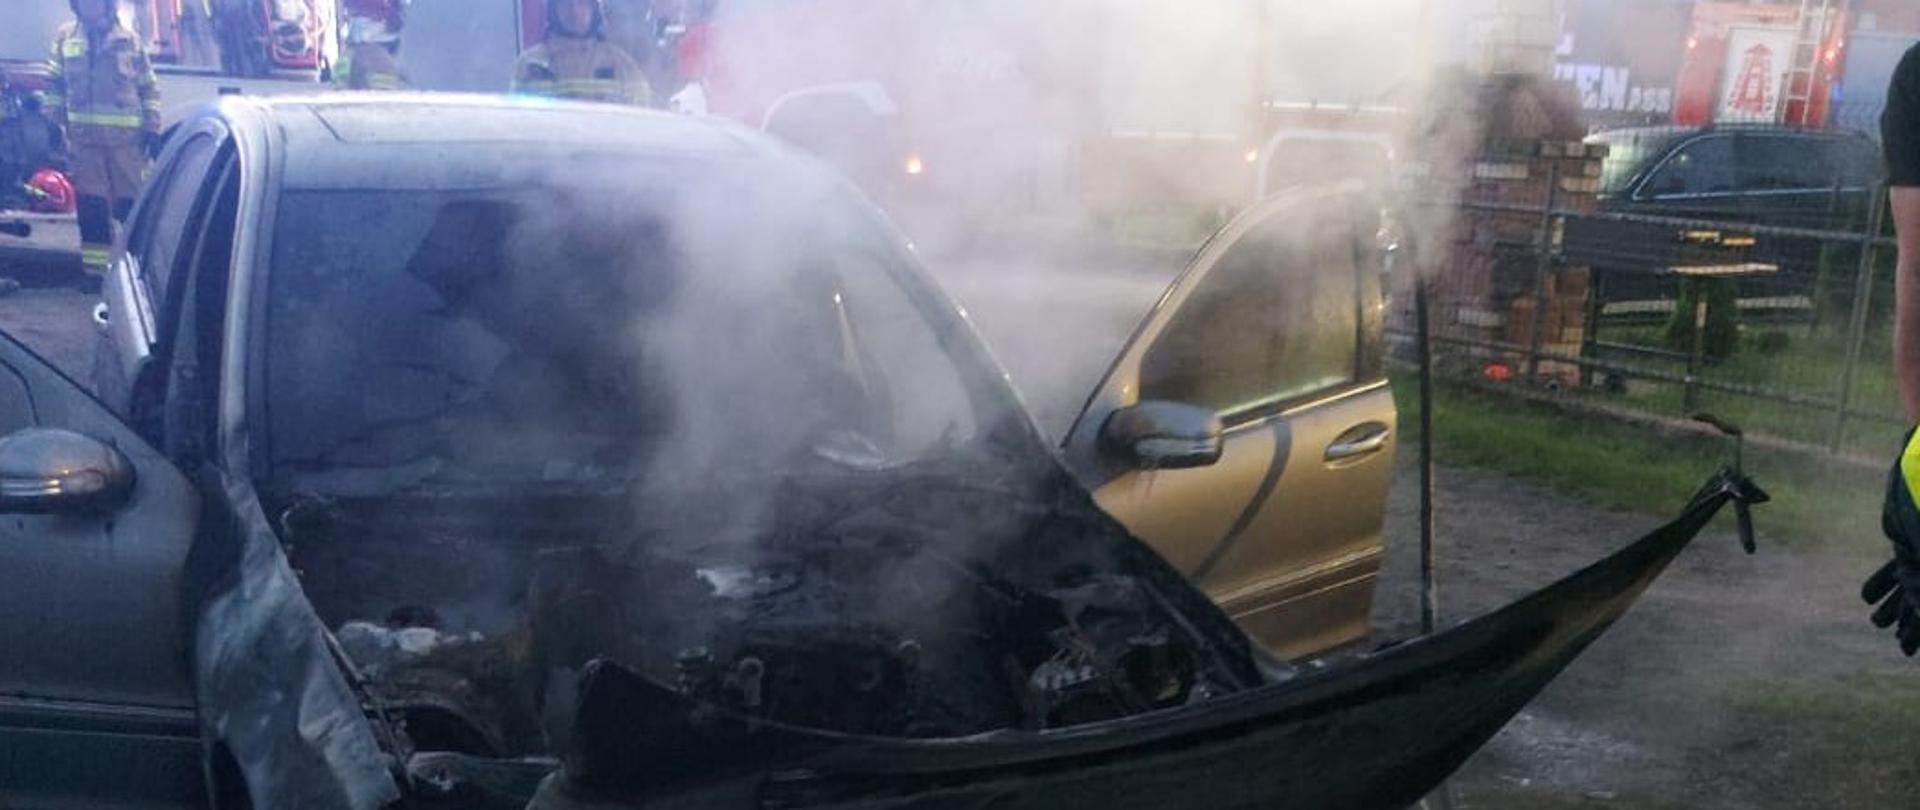 Zdjęcie przedstawia zniszczony przez pożar samochód osobowy. 